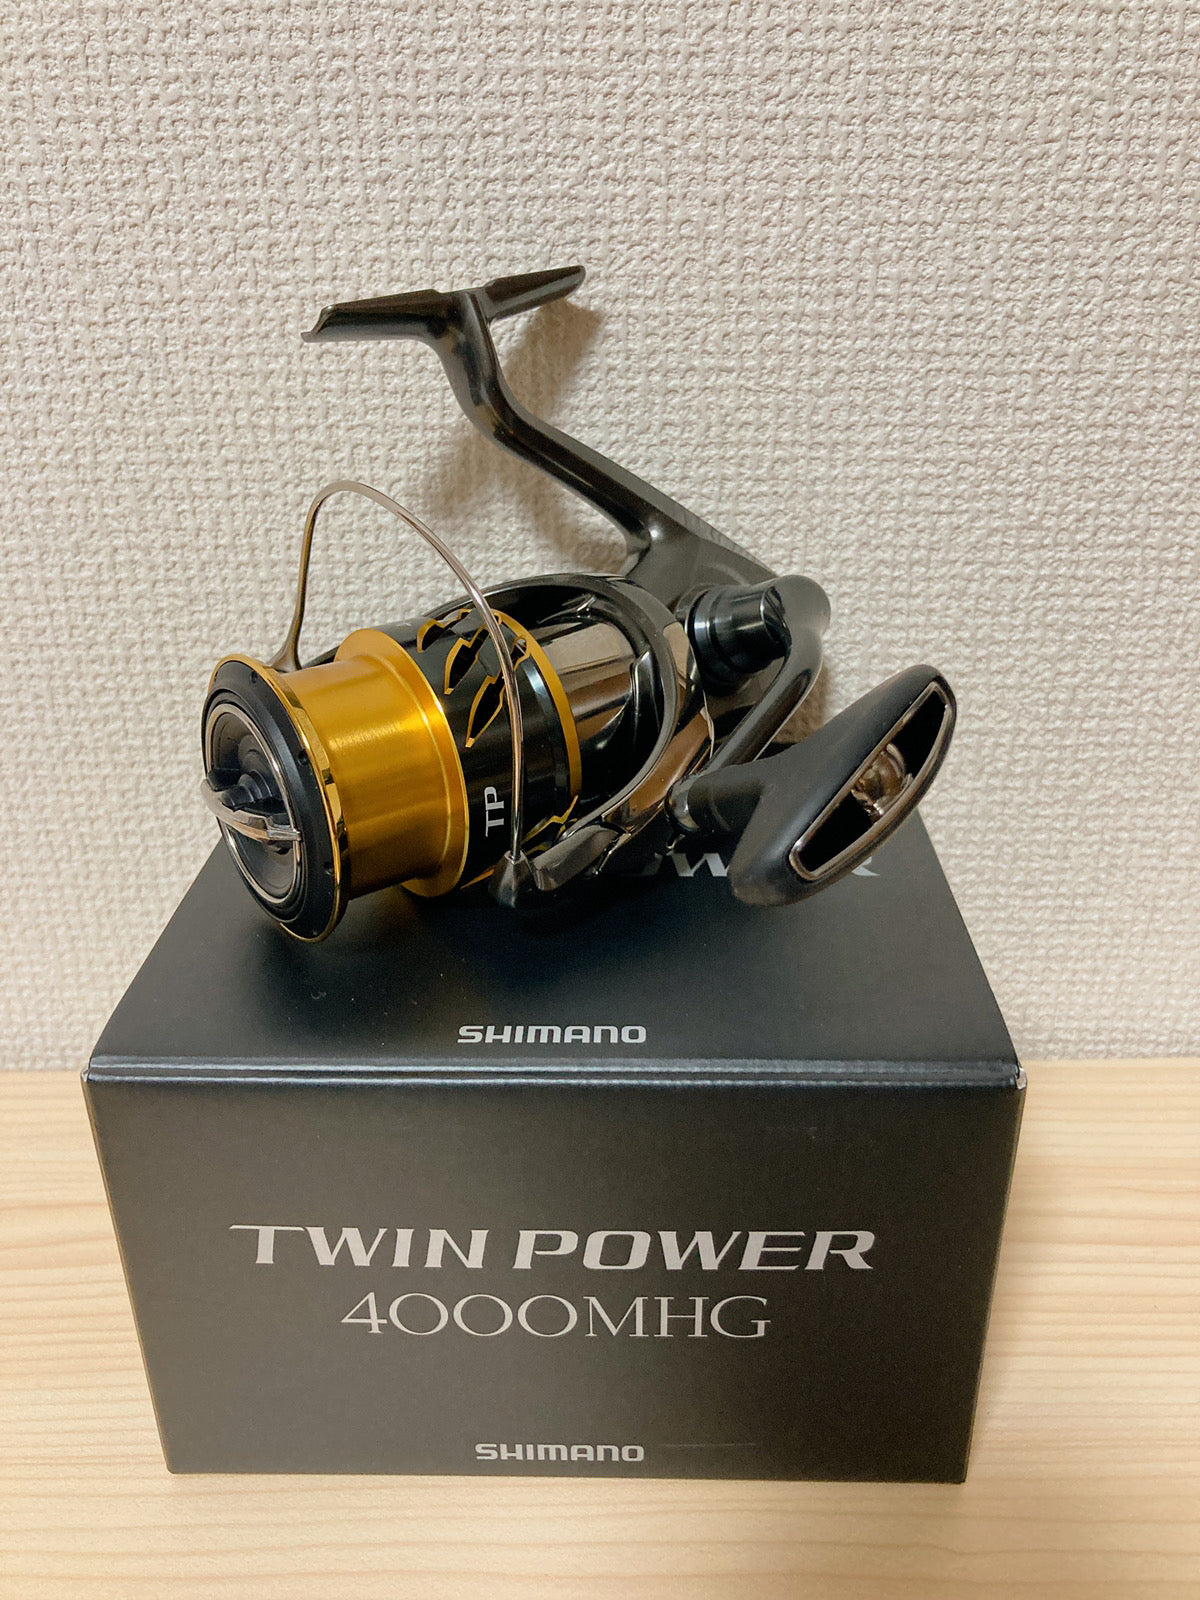 Shimano twin power